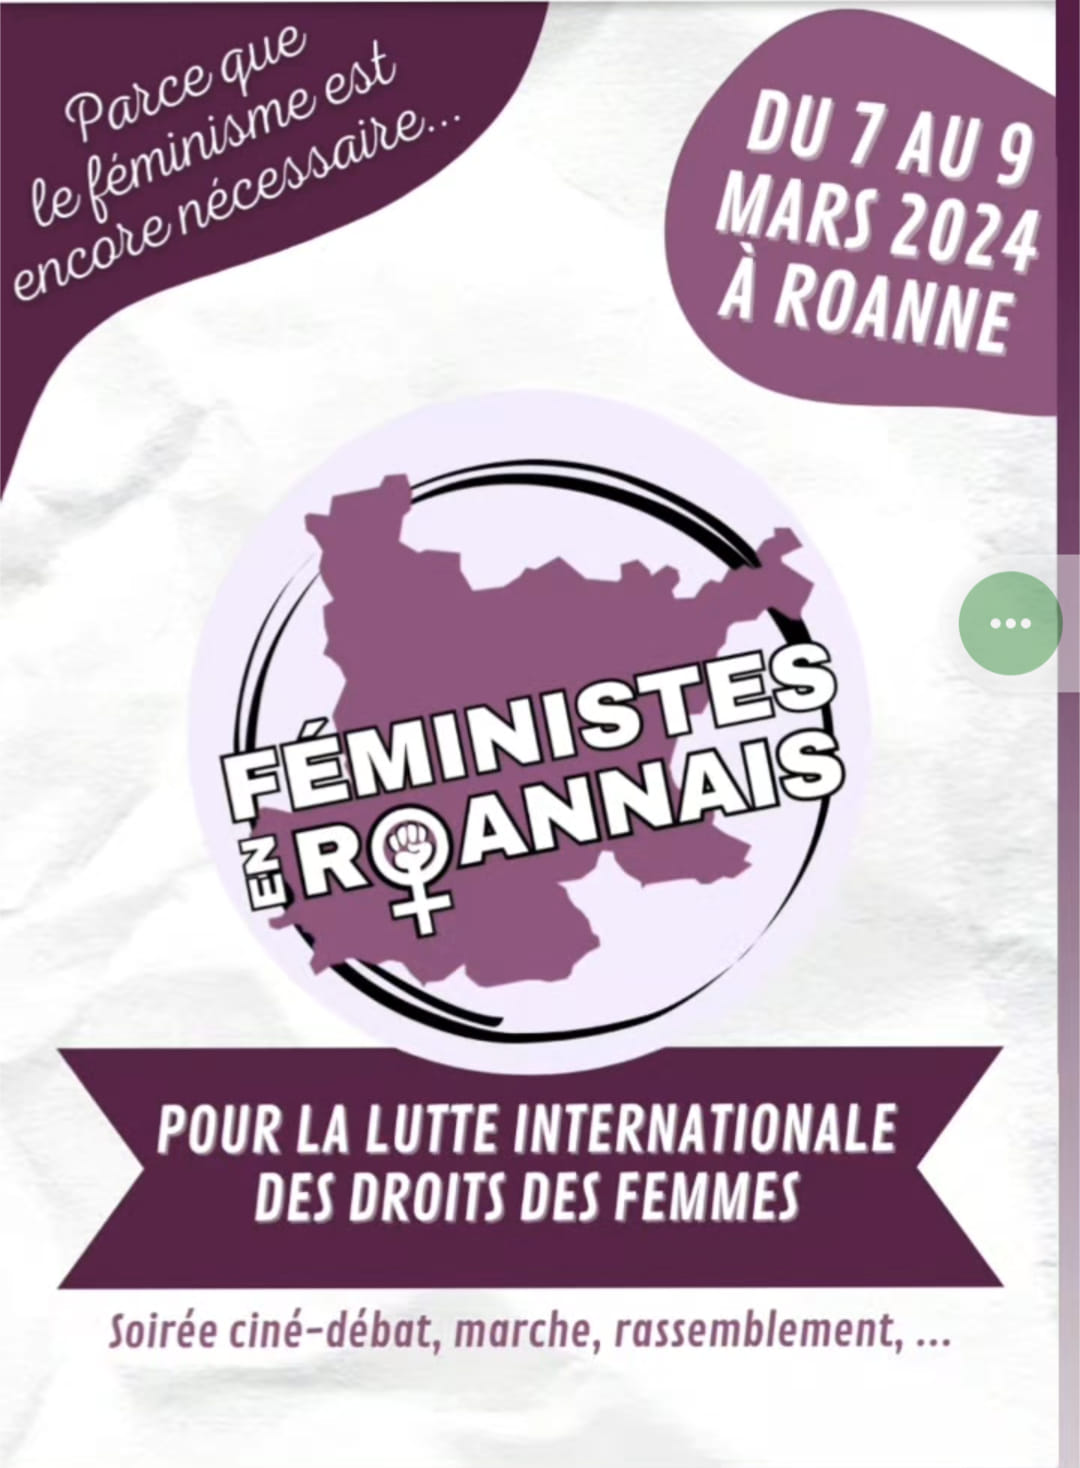 Le Collectif 88% soutient Féministes en Roannais et ses événements